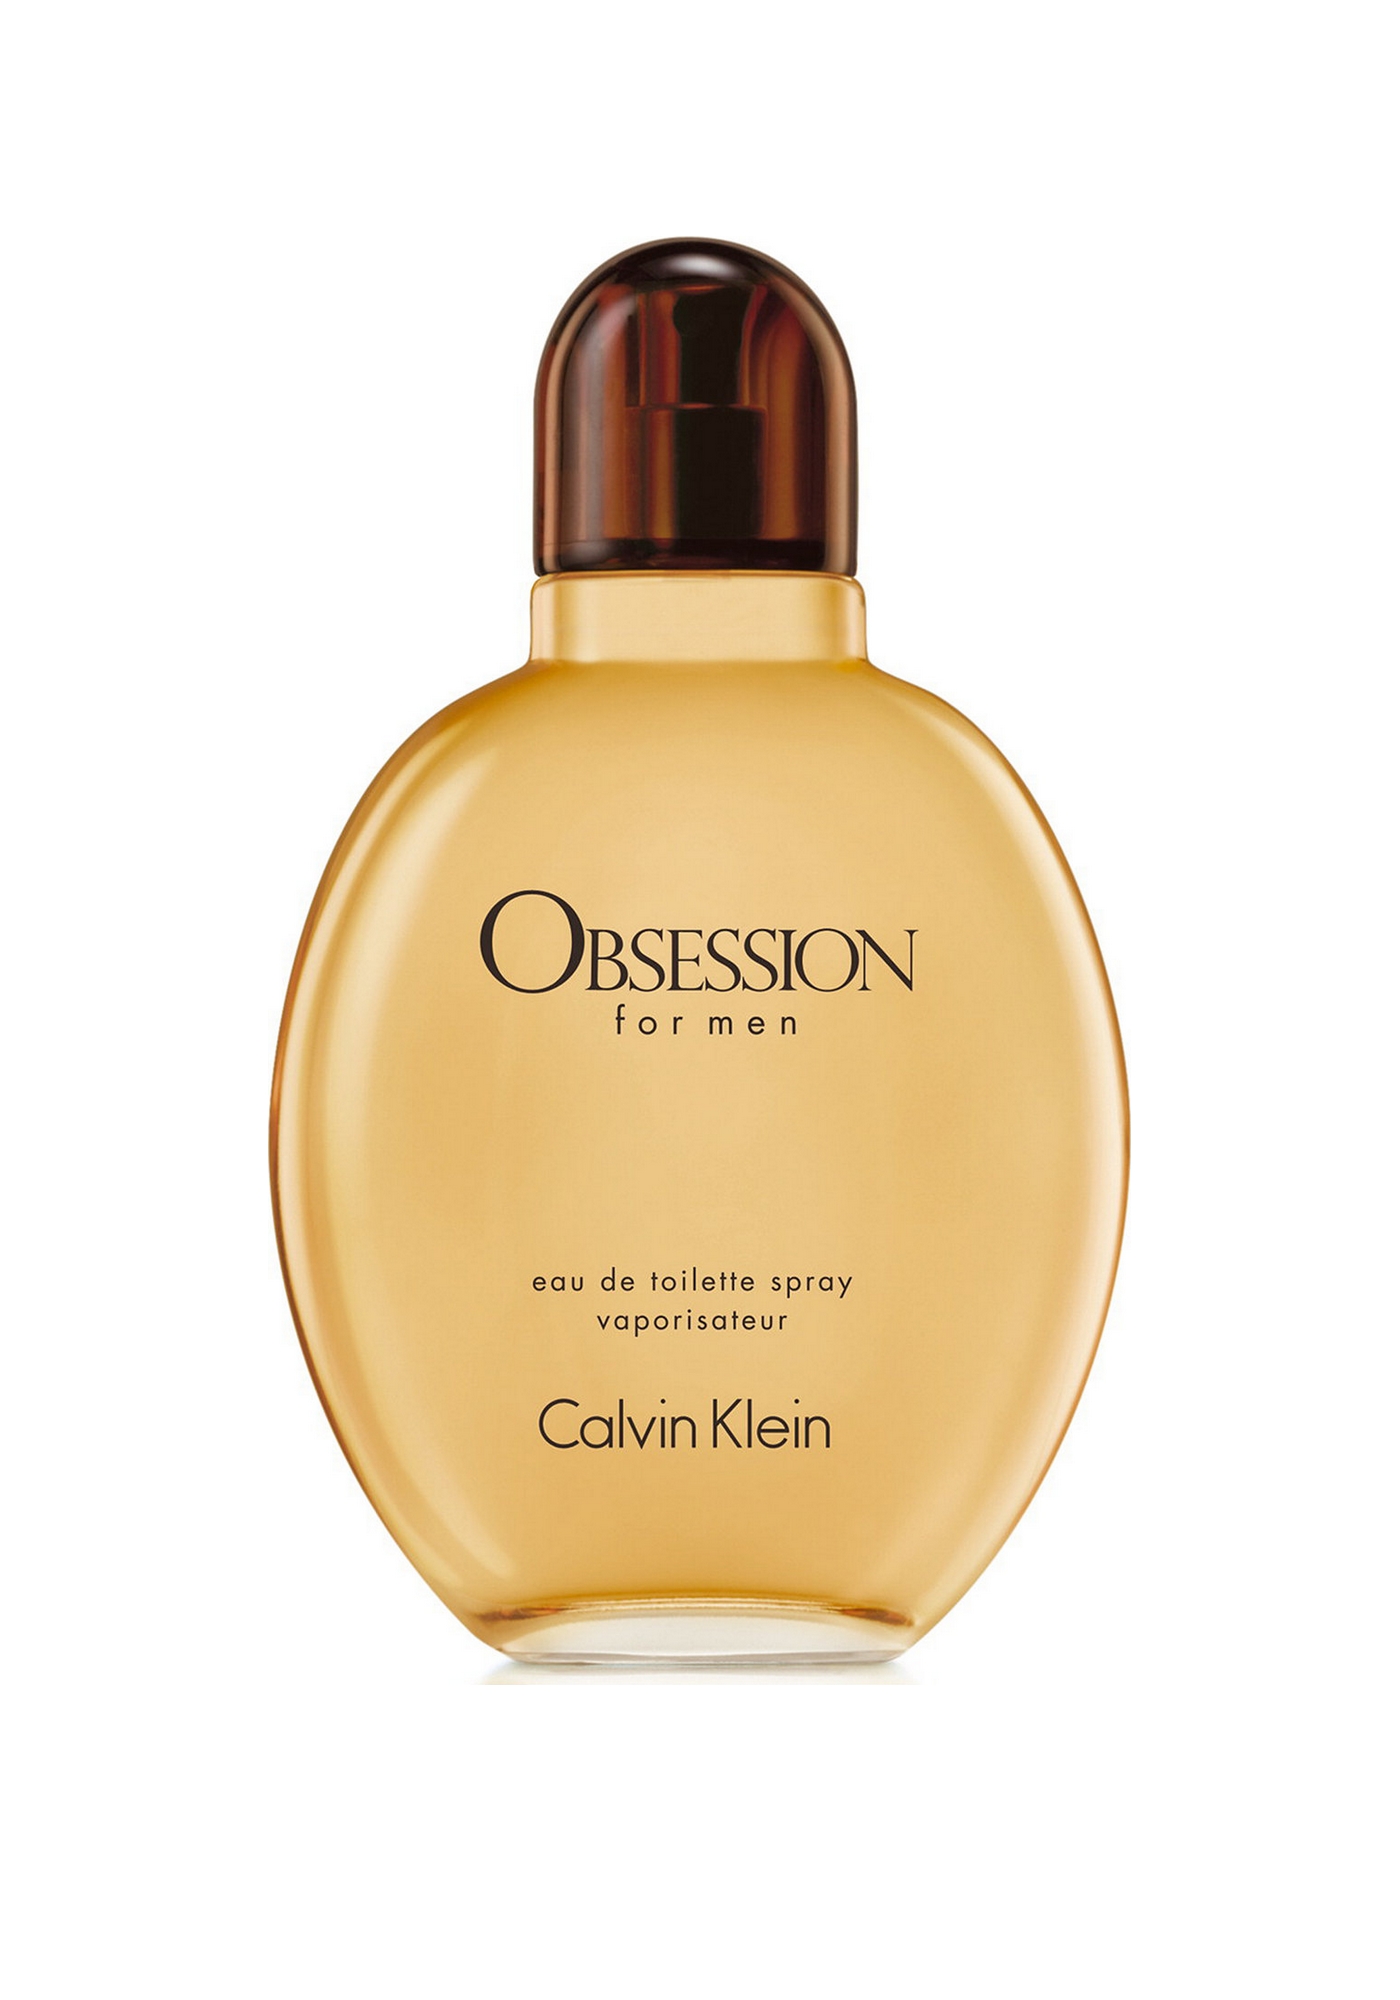 Weekendtas Bot Graag gedaan Heren Parfum, Calvin Klein Obsession, Eau de Toilette 75ml spray -...